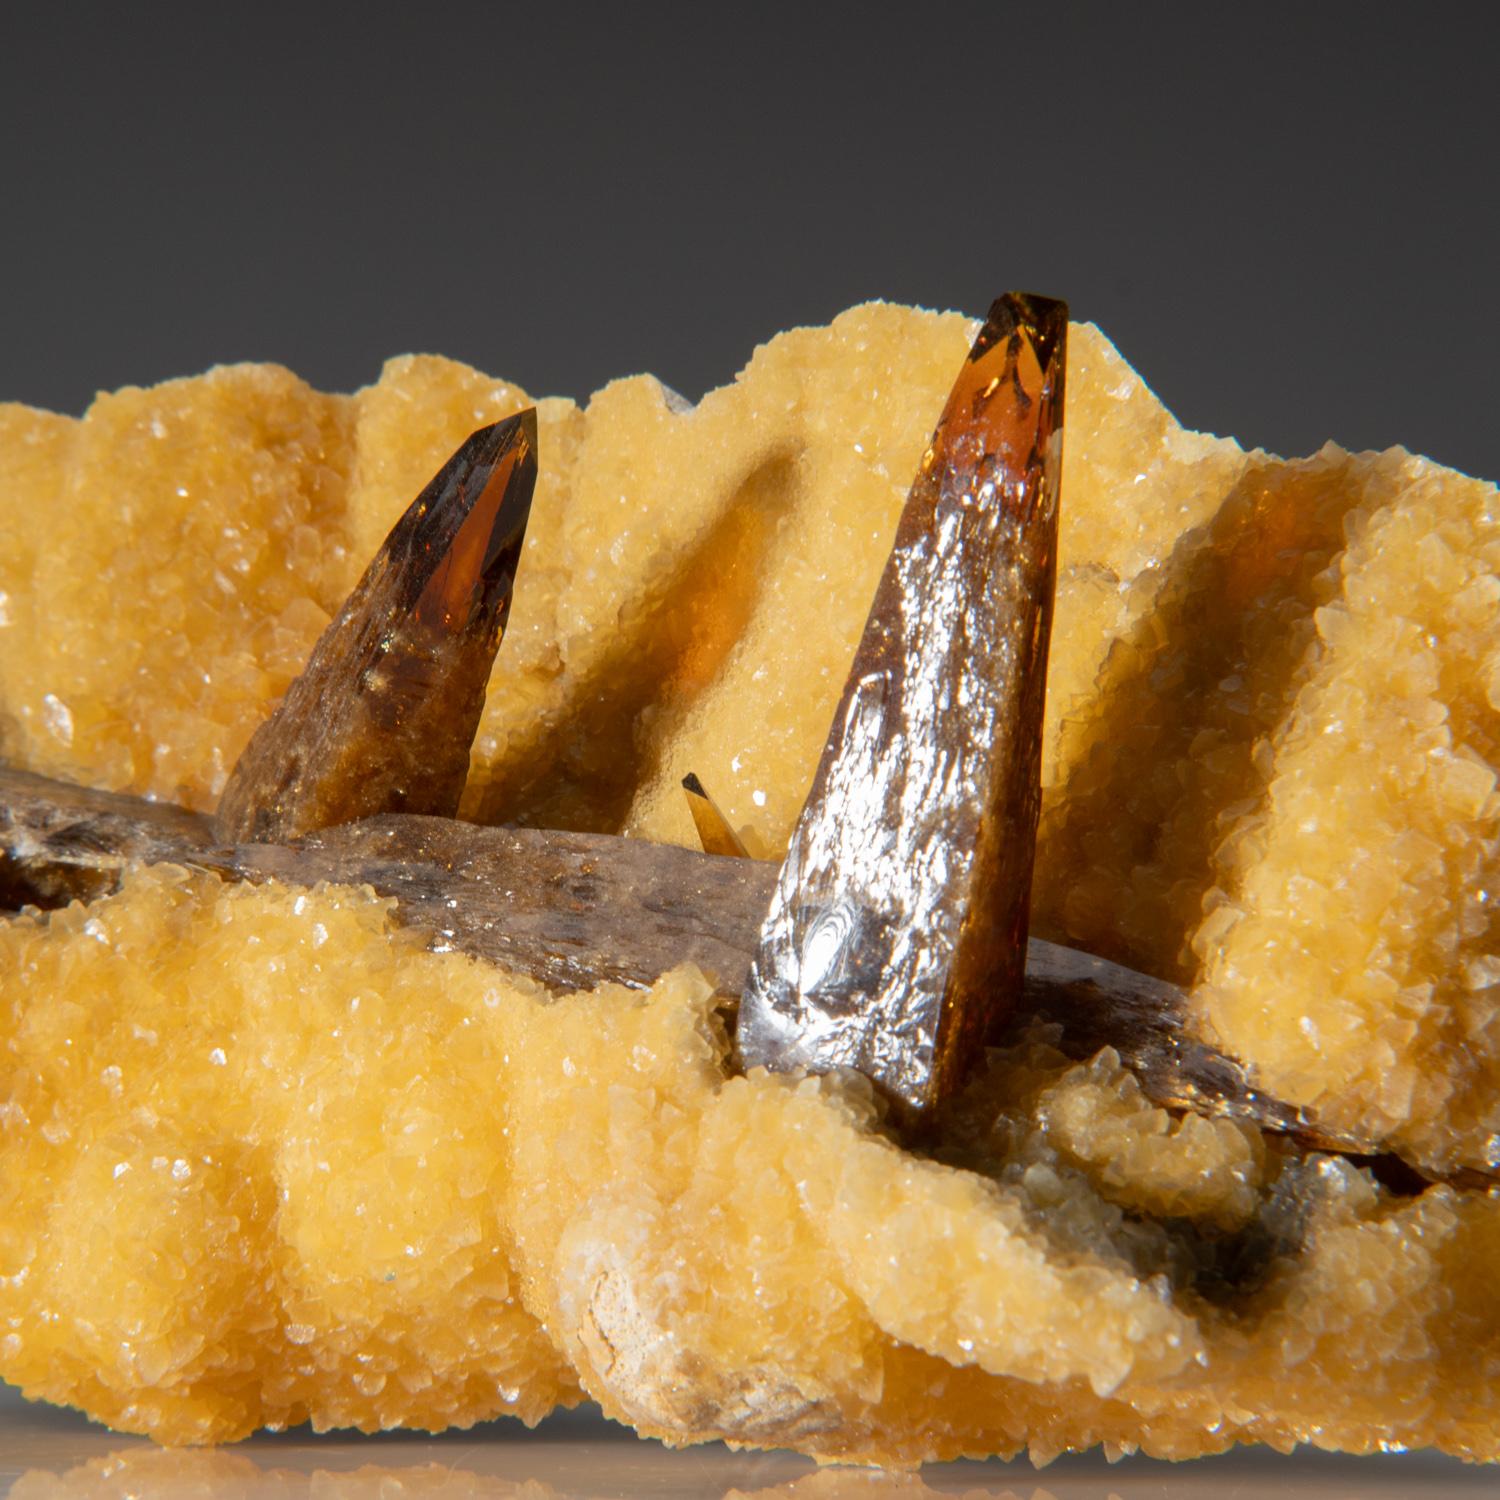 De Elk Creek, comté de Meade, Dakota du Sud

Spécimen classique de plusieurs cristaux de barytine brun doré transparents et lustrés sur une matrice recouverte de calcite jaune.

Poids : 1.85 lbs, Dimensions : 5.5 x 2.5 x 3 pouces